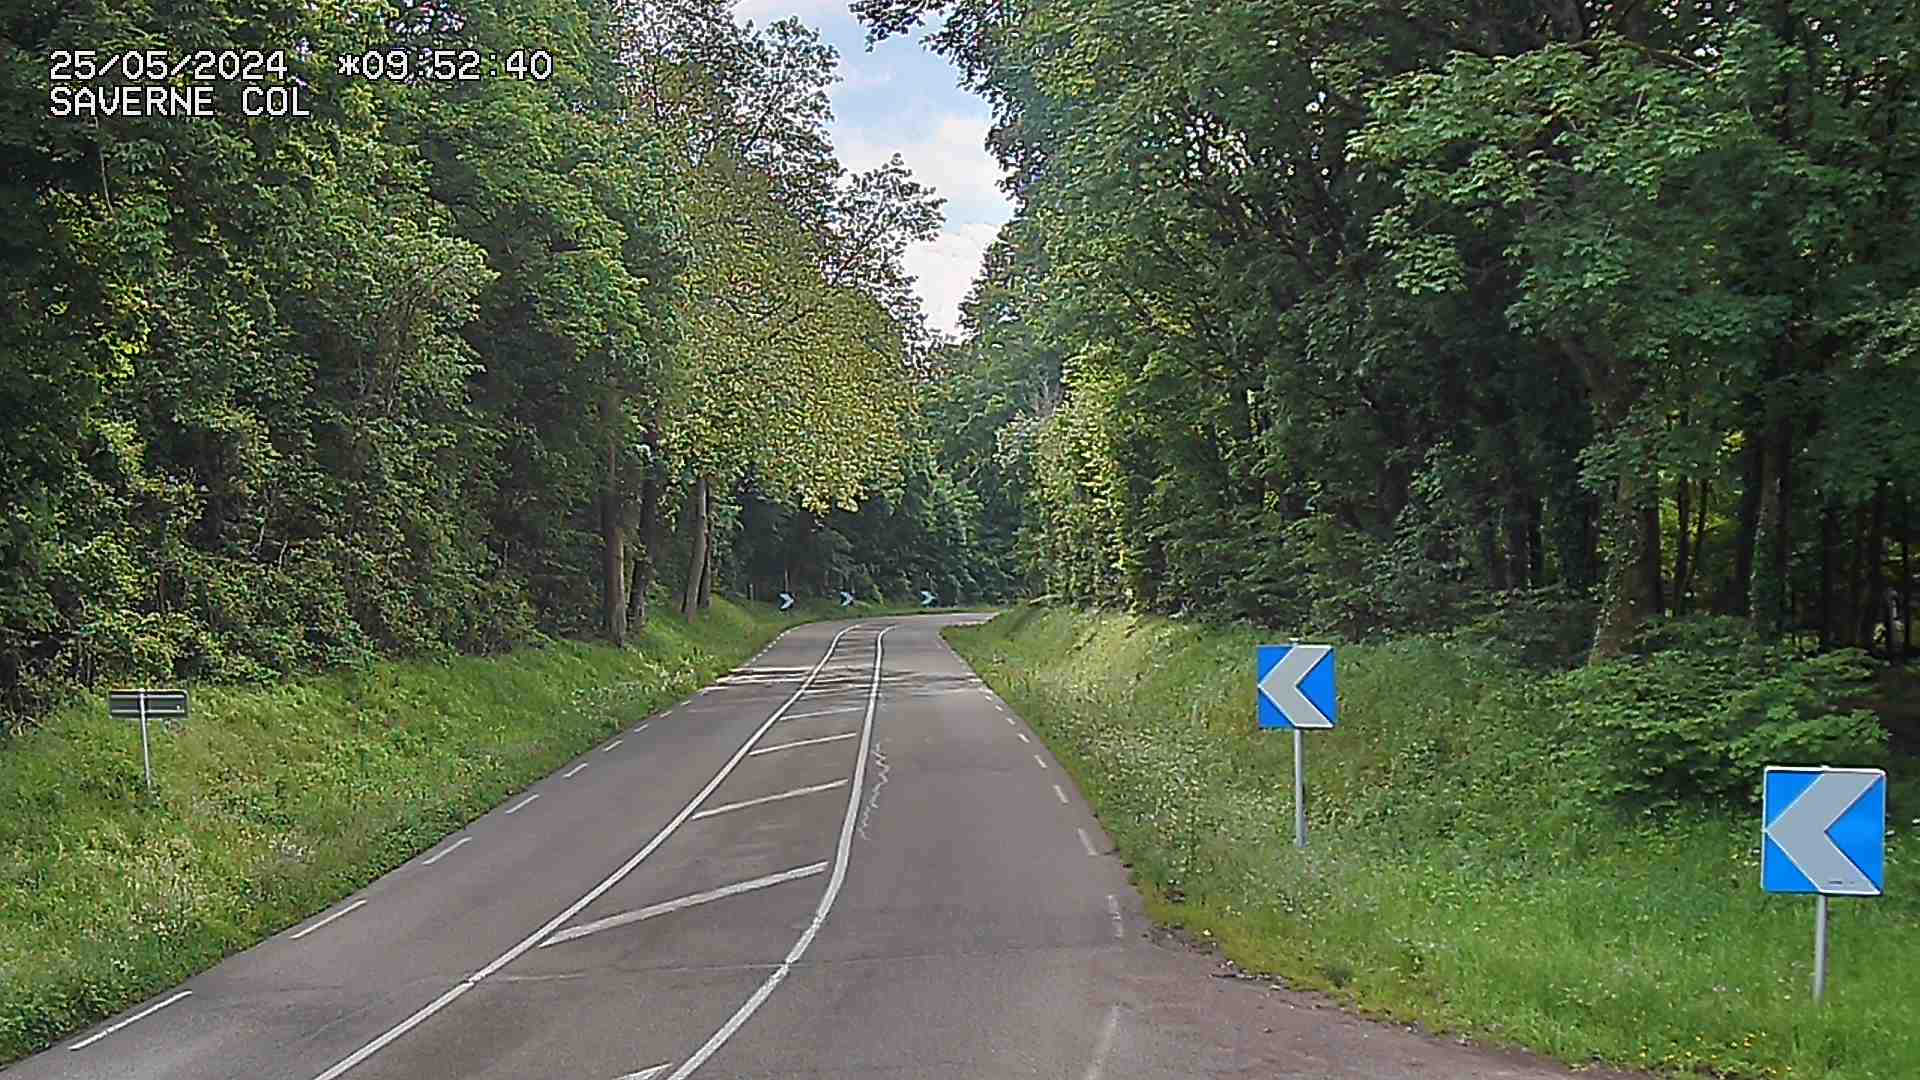 Webcam sur le col de Saverne sur la D1004. Vue orientée vers Saverne dans le massif des Vosges